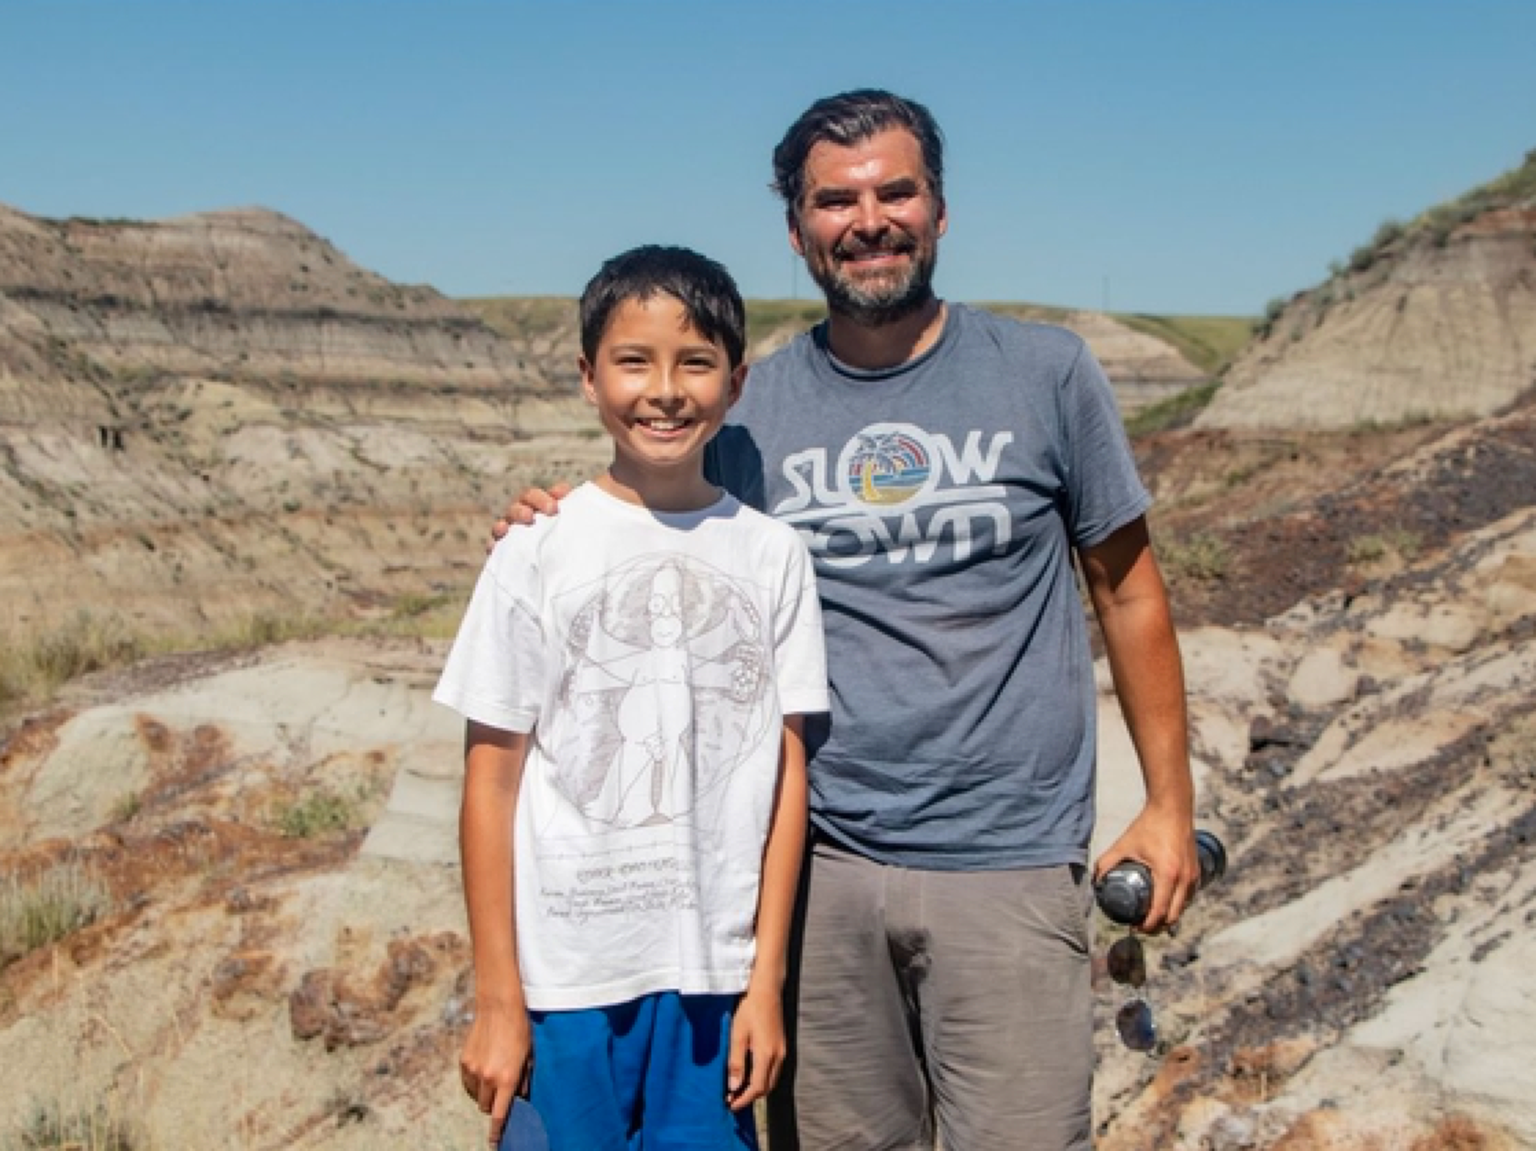 Isaga matkama läinud teismeline poiss leidis dinosauruse fossiili.